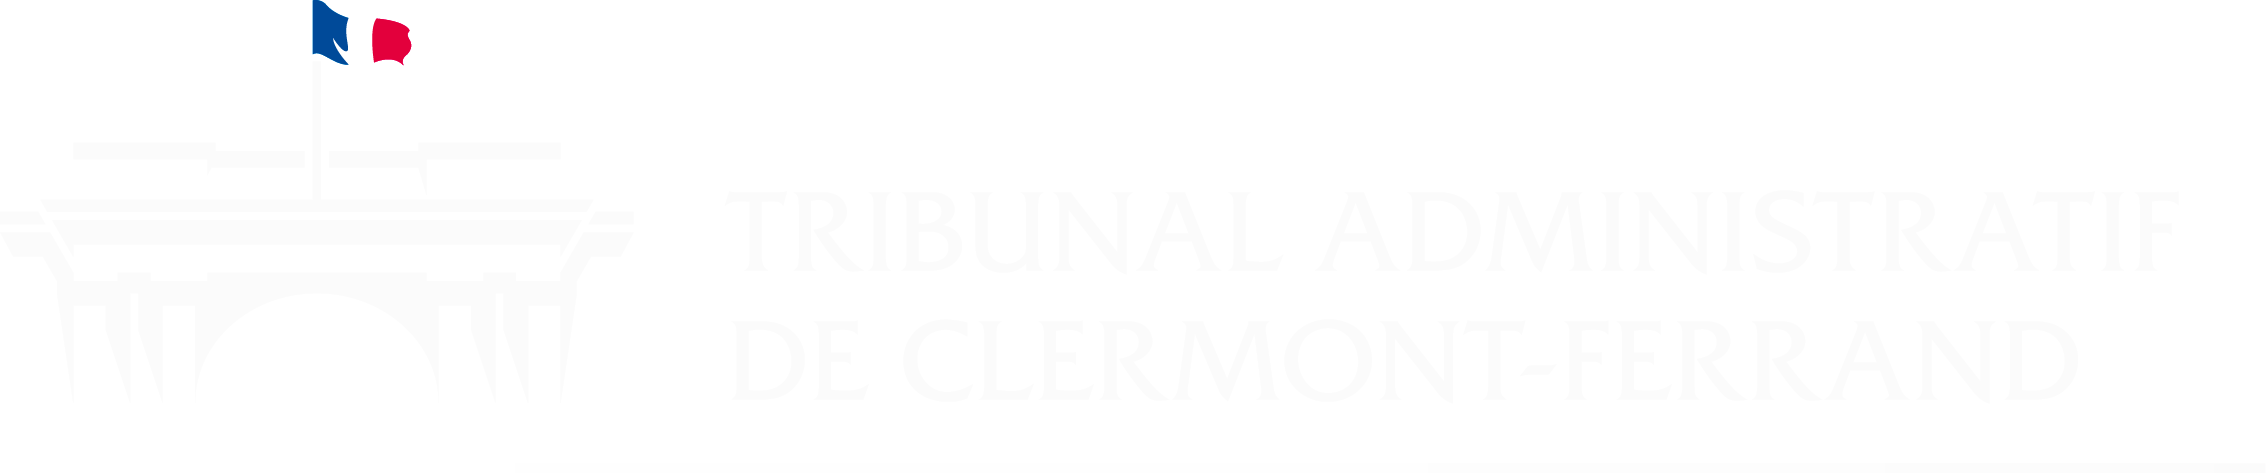 Tribunal administratif de Clermont-Ferrand - Retour à l'accueil